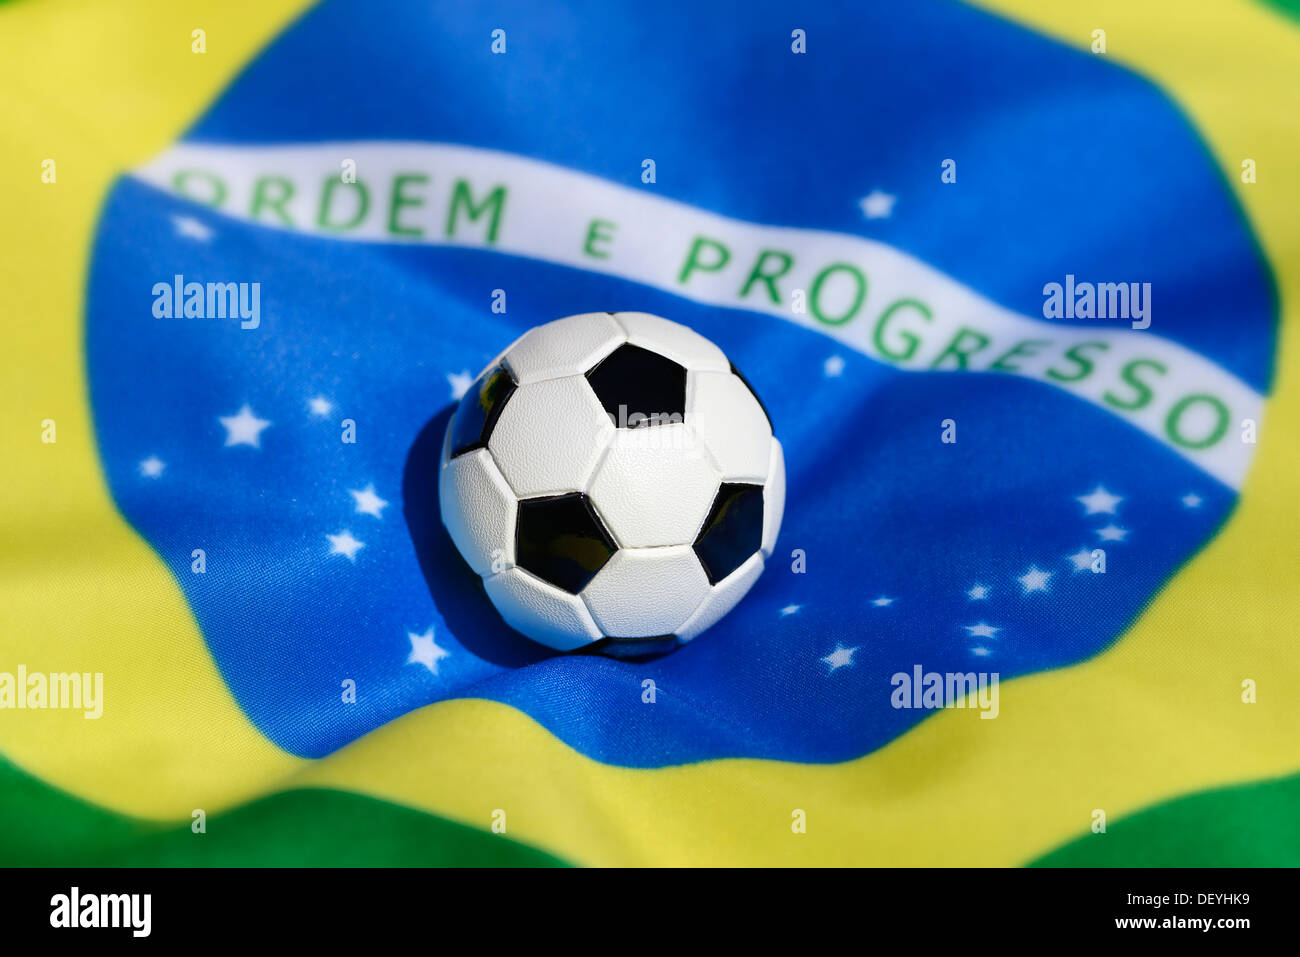 El fútbol en la bandera brasileña, el Campeonato del Mundo de fútbol en 2014 en Brasil, Foto de stock